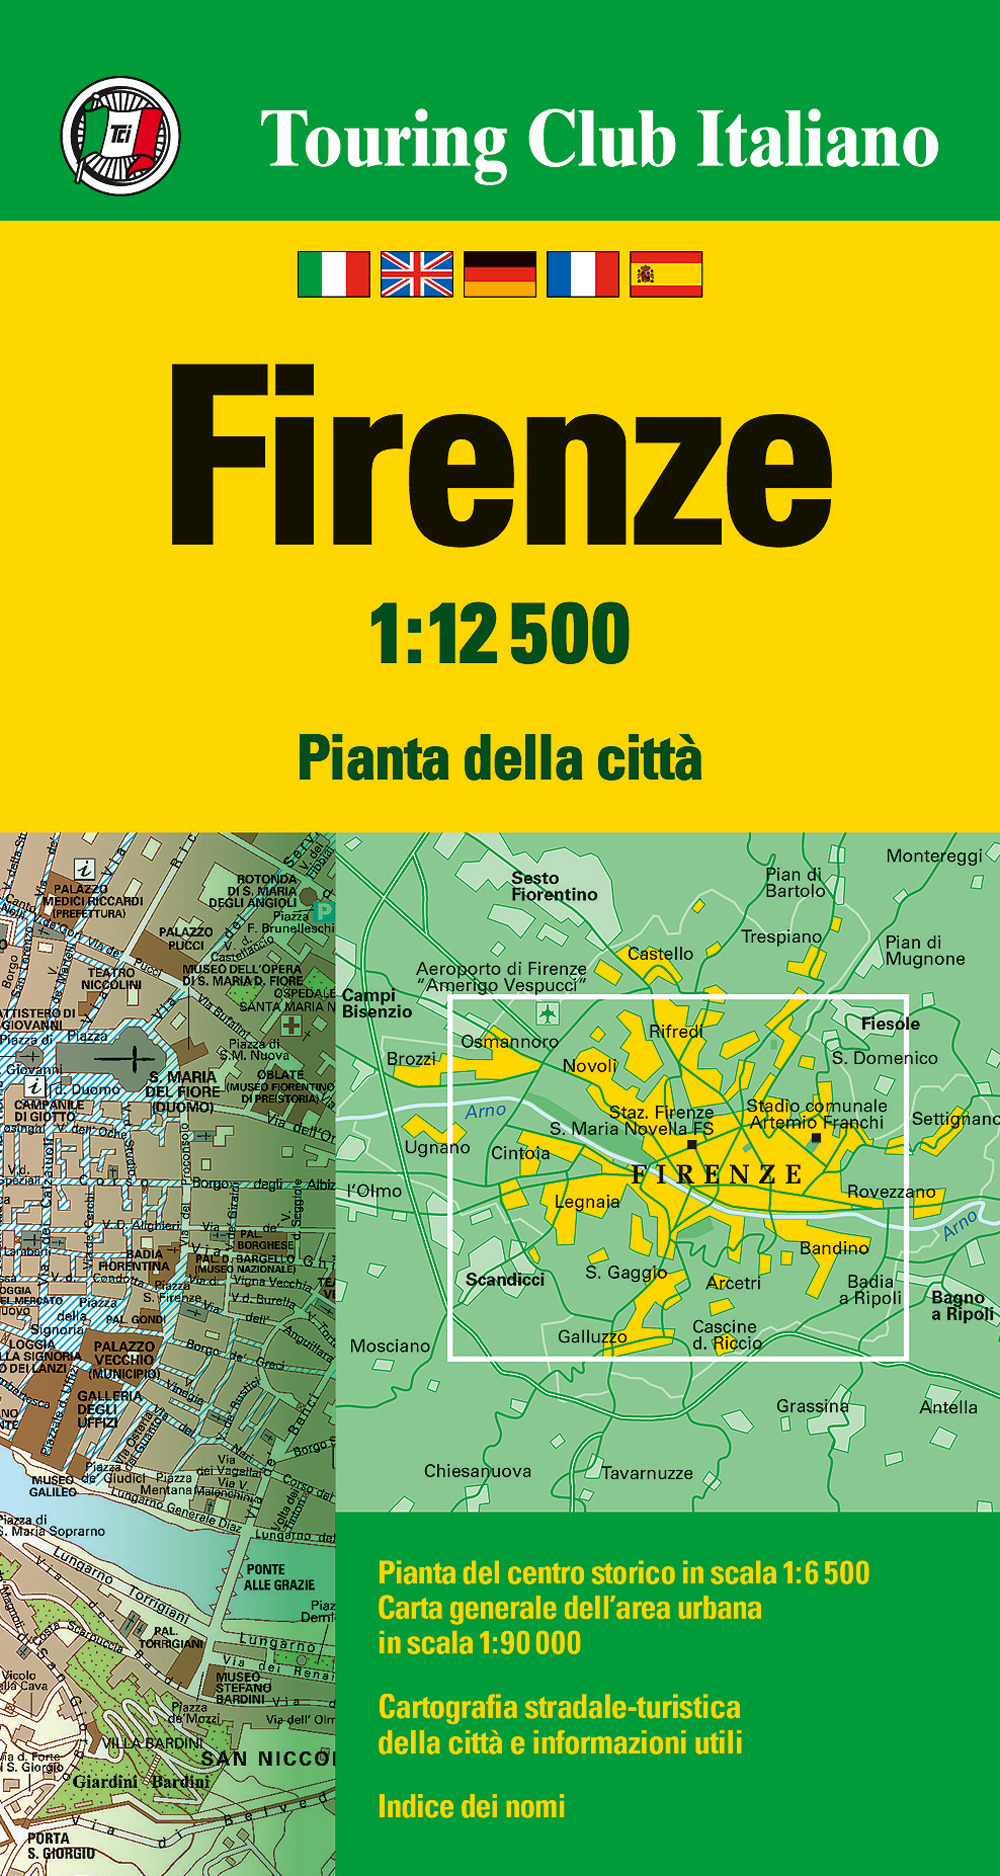 Firenze 1:12.500. Ediz. multilingue